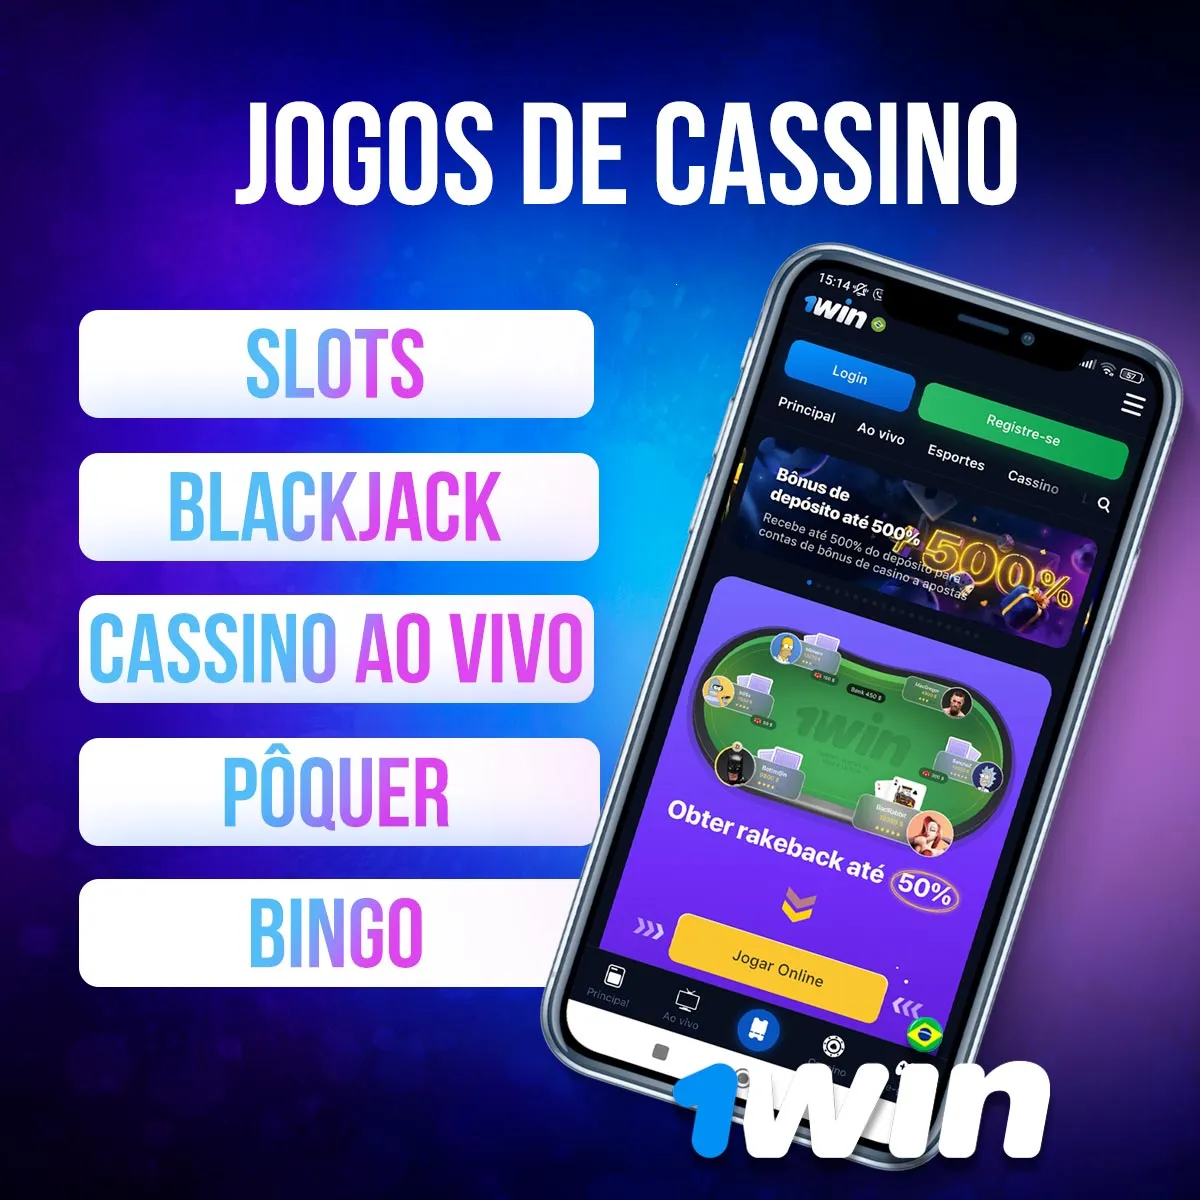 Revisão dos jogos de cassino da casa de apostas 1win no Brasil